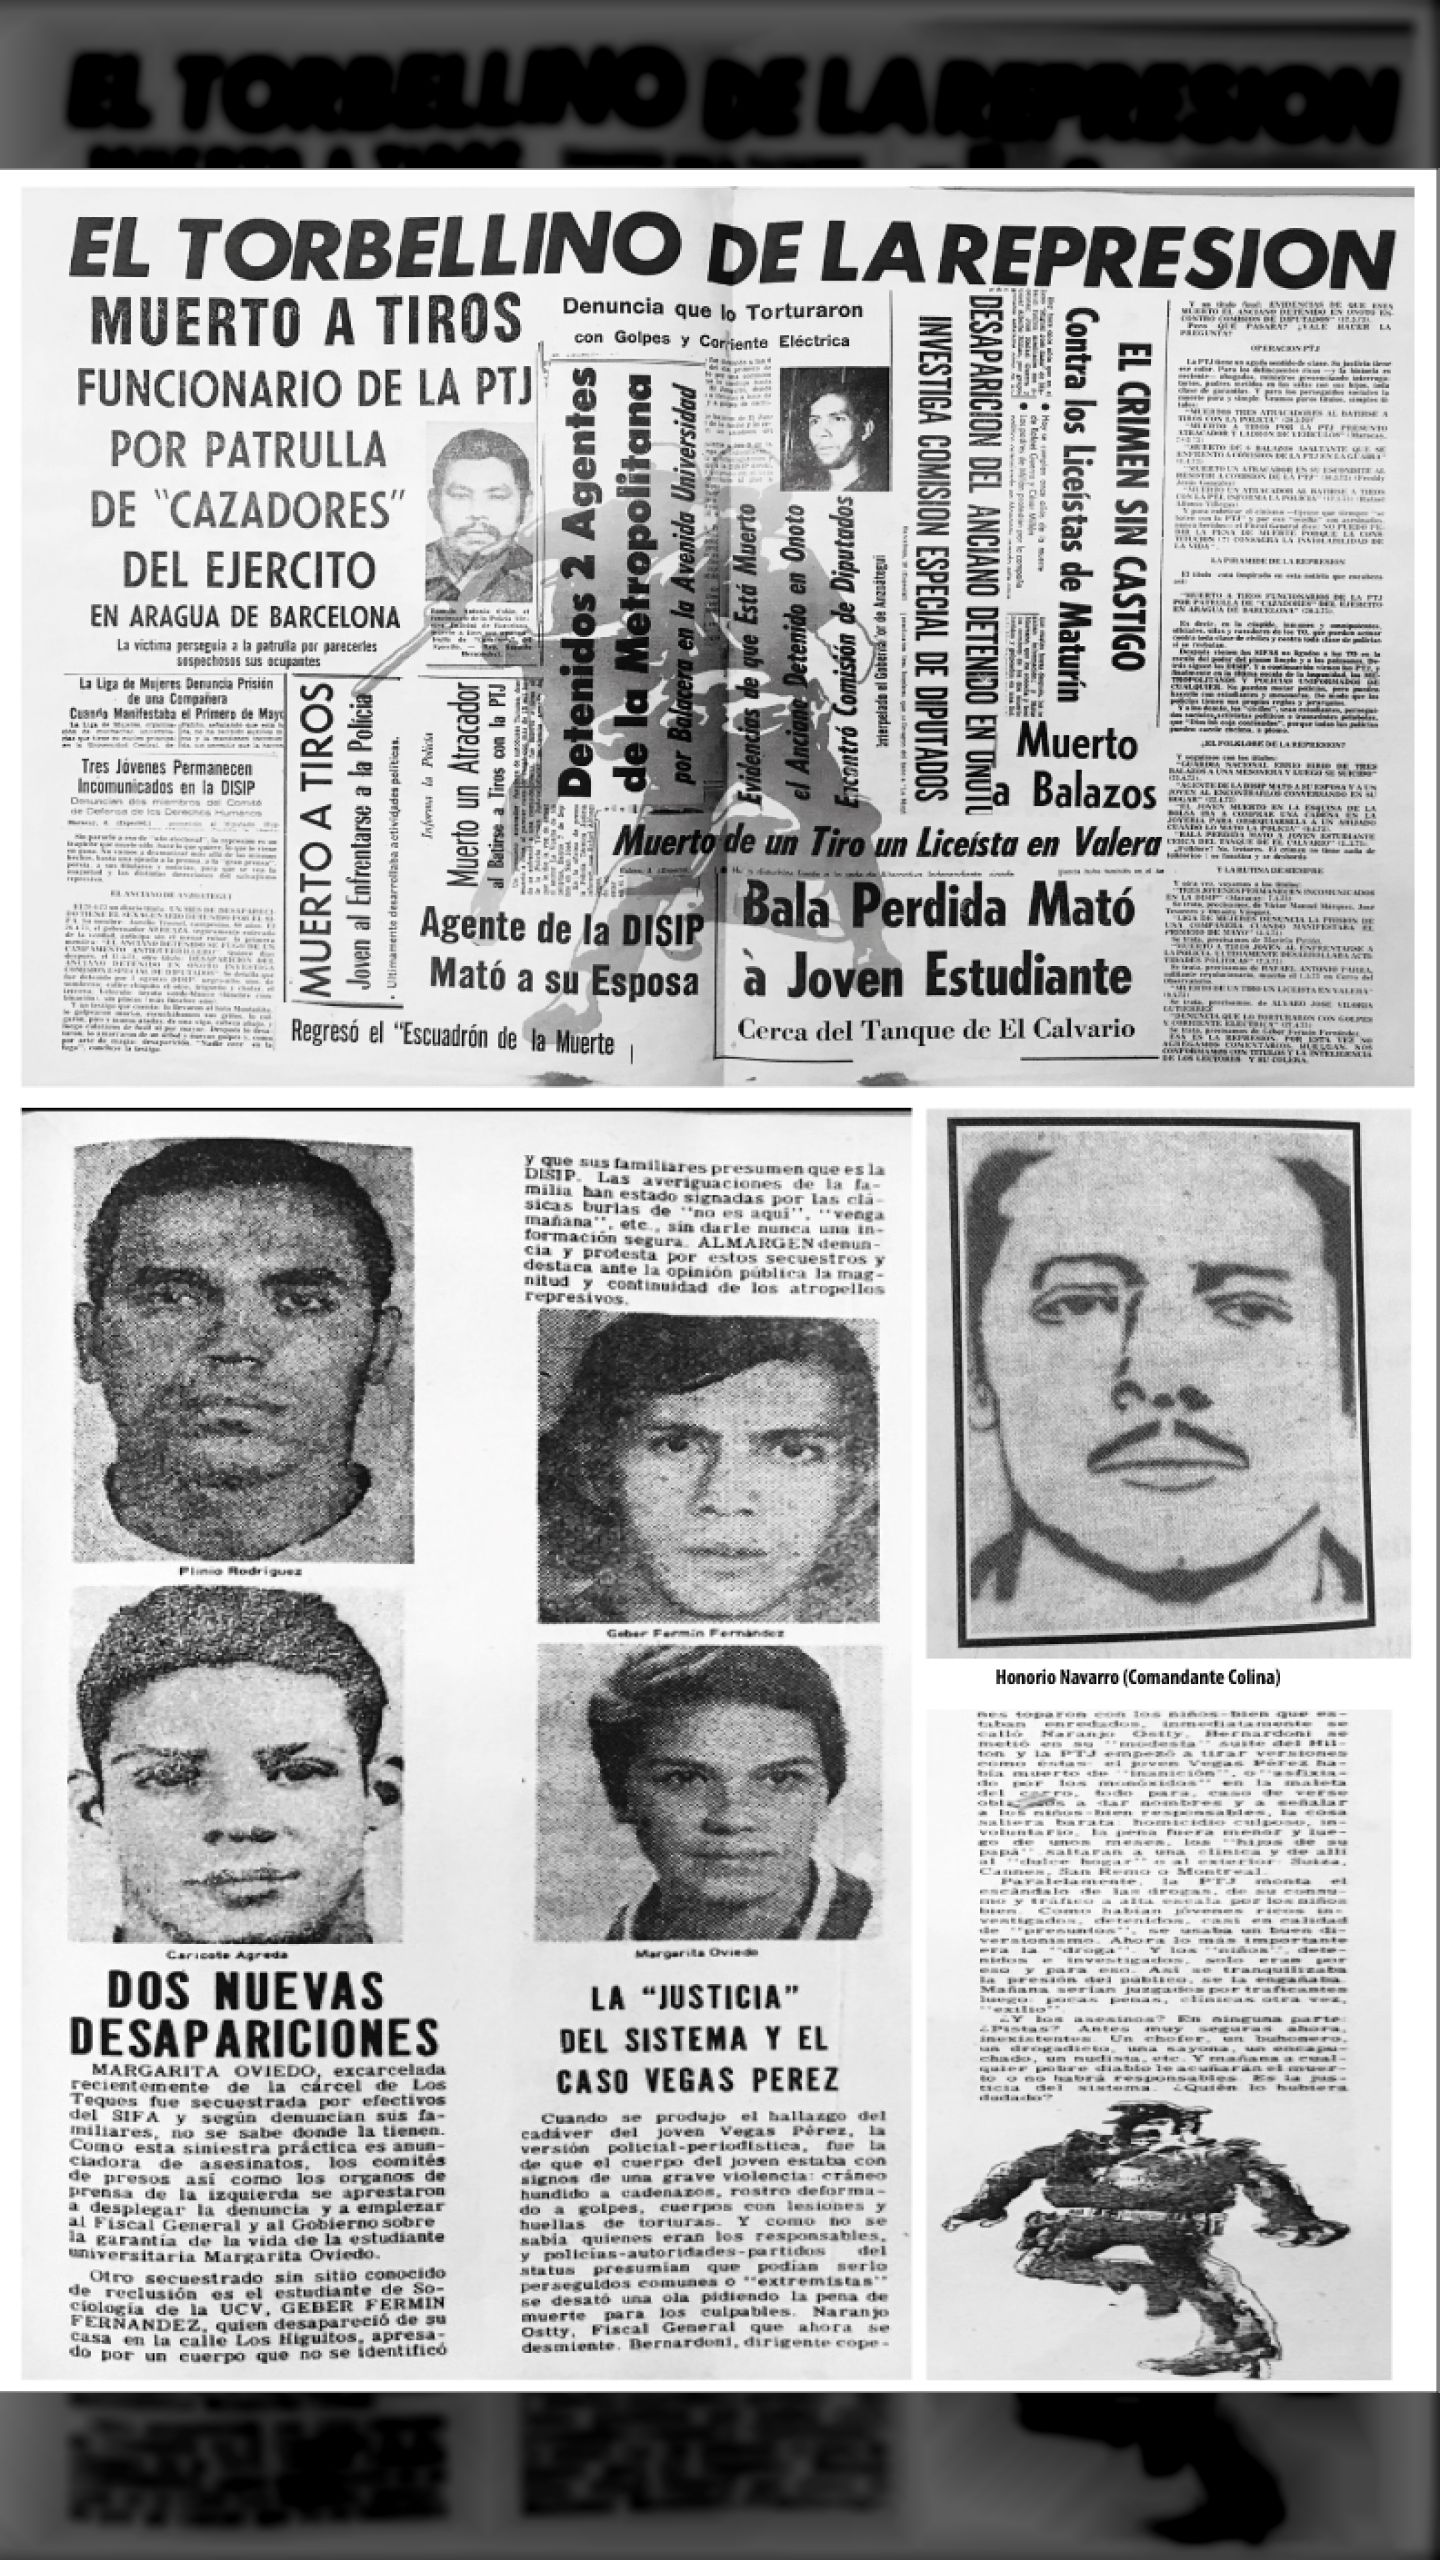 EL TORBELLINO DE LA REPRESIÓN (REVISTA AL MARGEN, 7 al 14 de junio 1973)